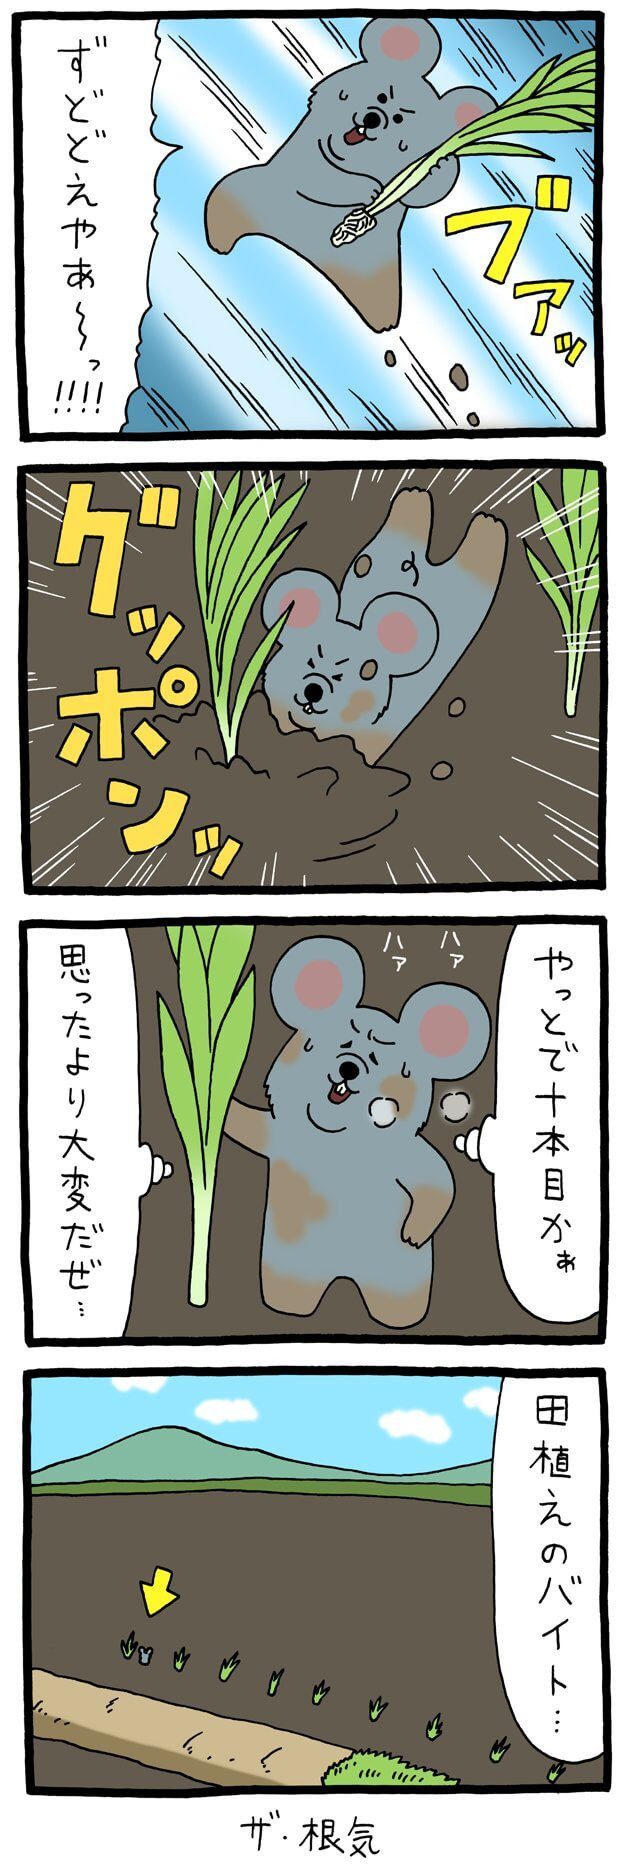 キューライス　漫画　4コマ　ネズミダ　バイト　タウンワークマガジン